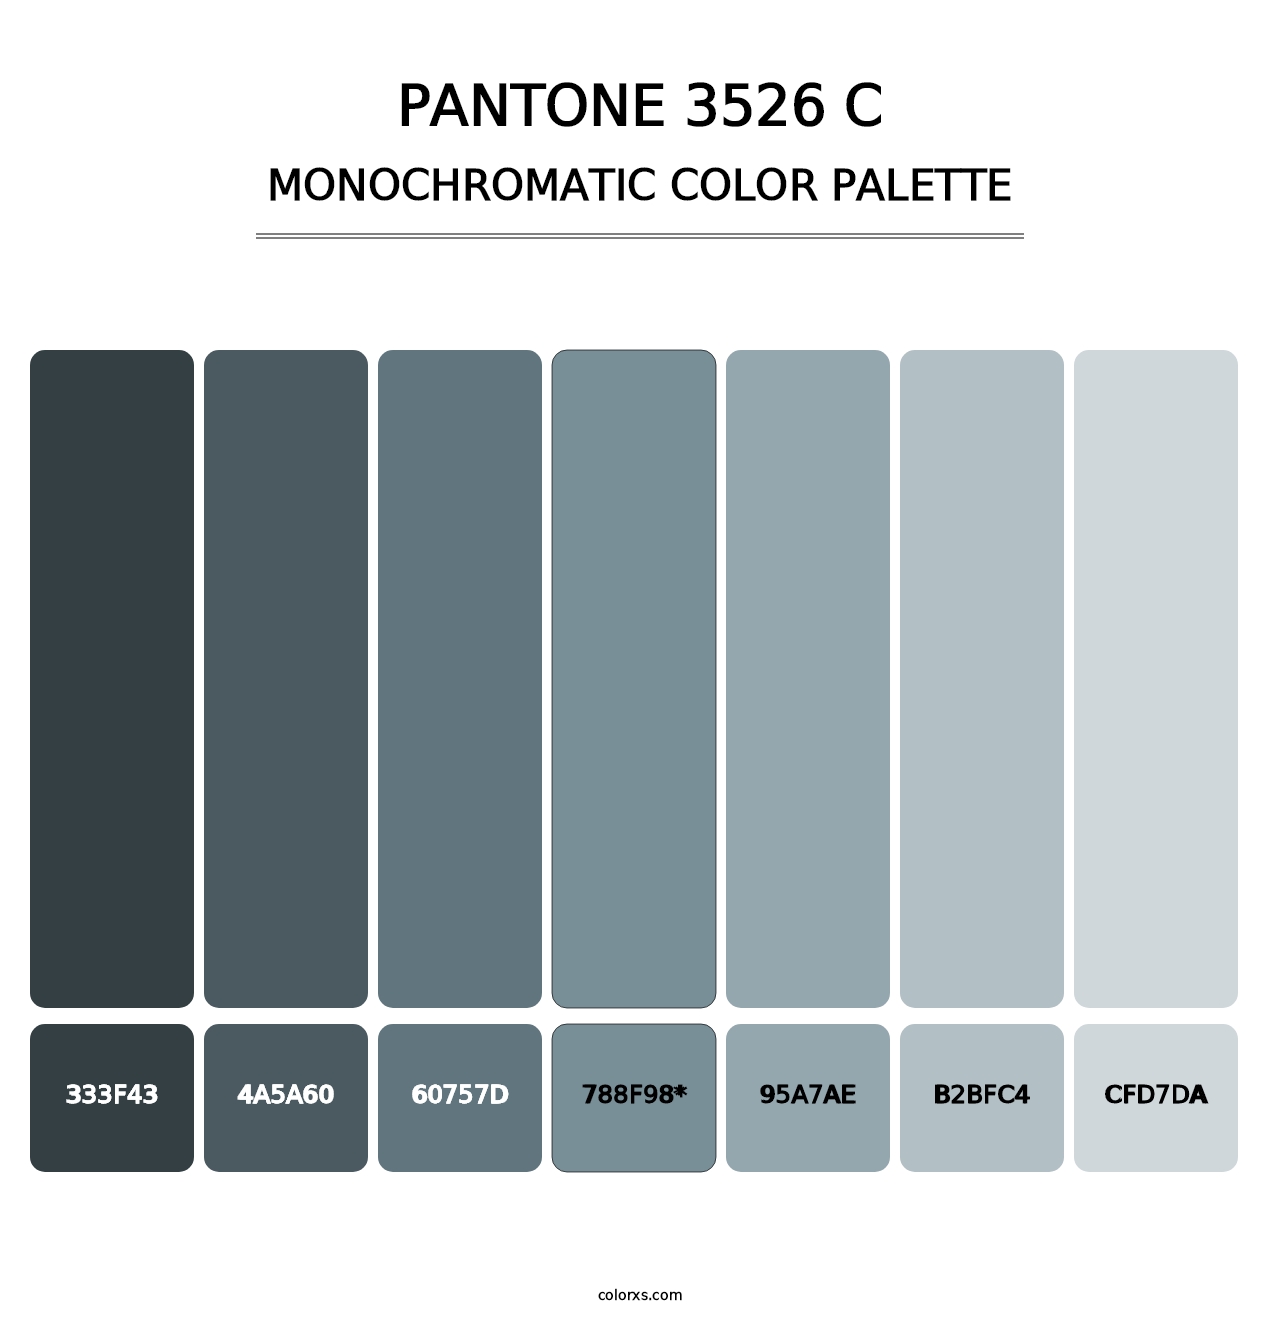 PANTONE 3526 C - Monochromatic Color Palette